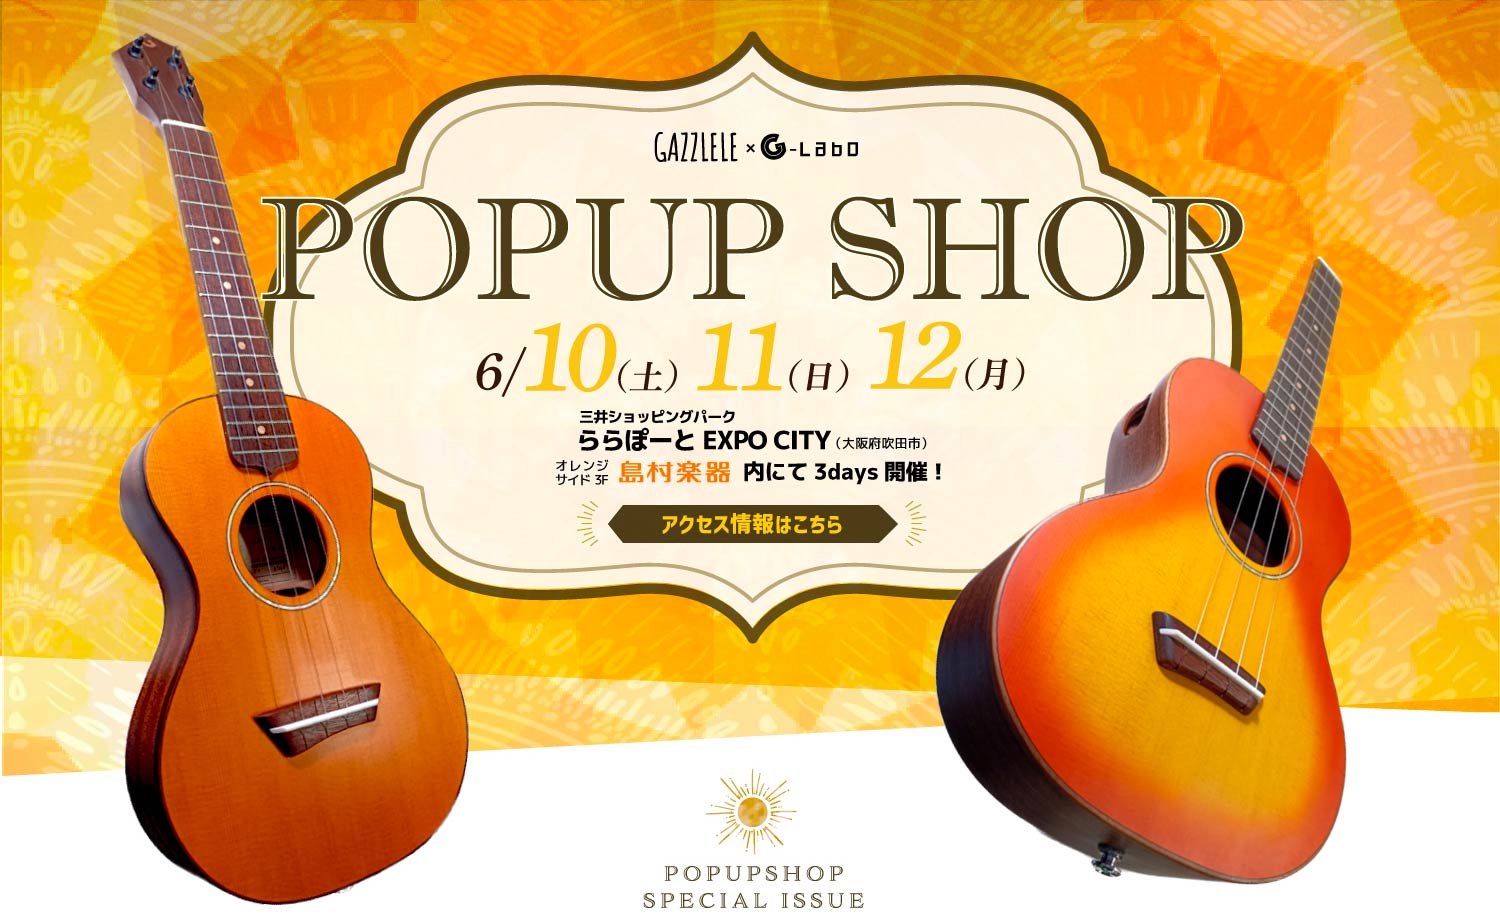 POPUP SHOP 三井ショッピングパークららぽーとEXPO CITY 島村楽器店内にて3days開催！